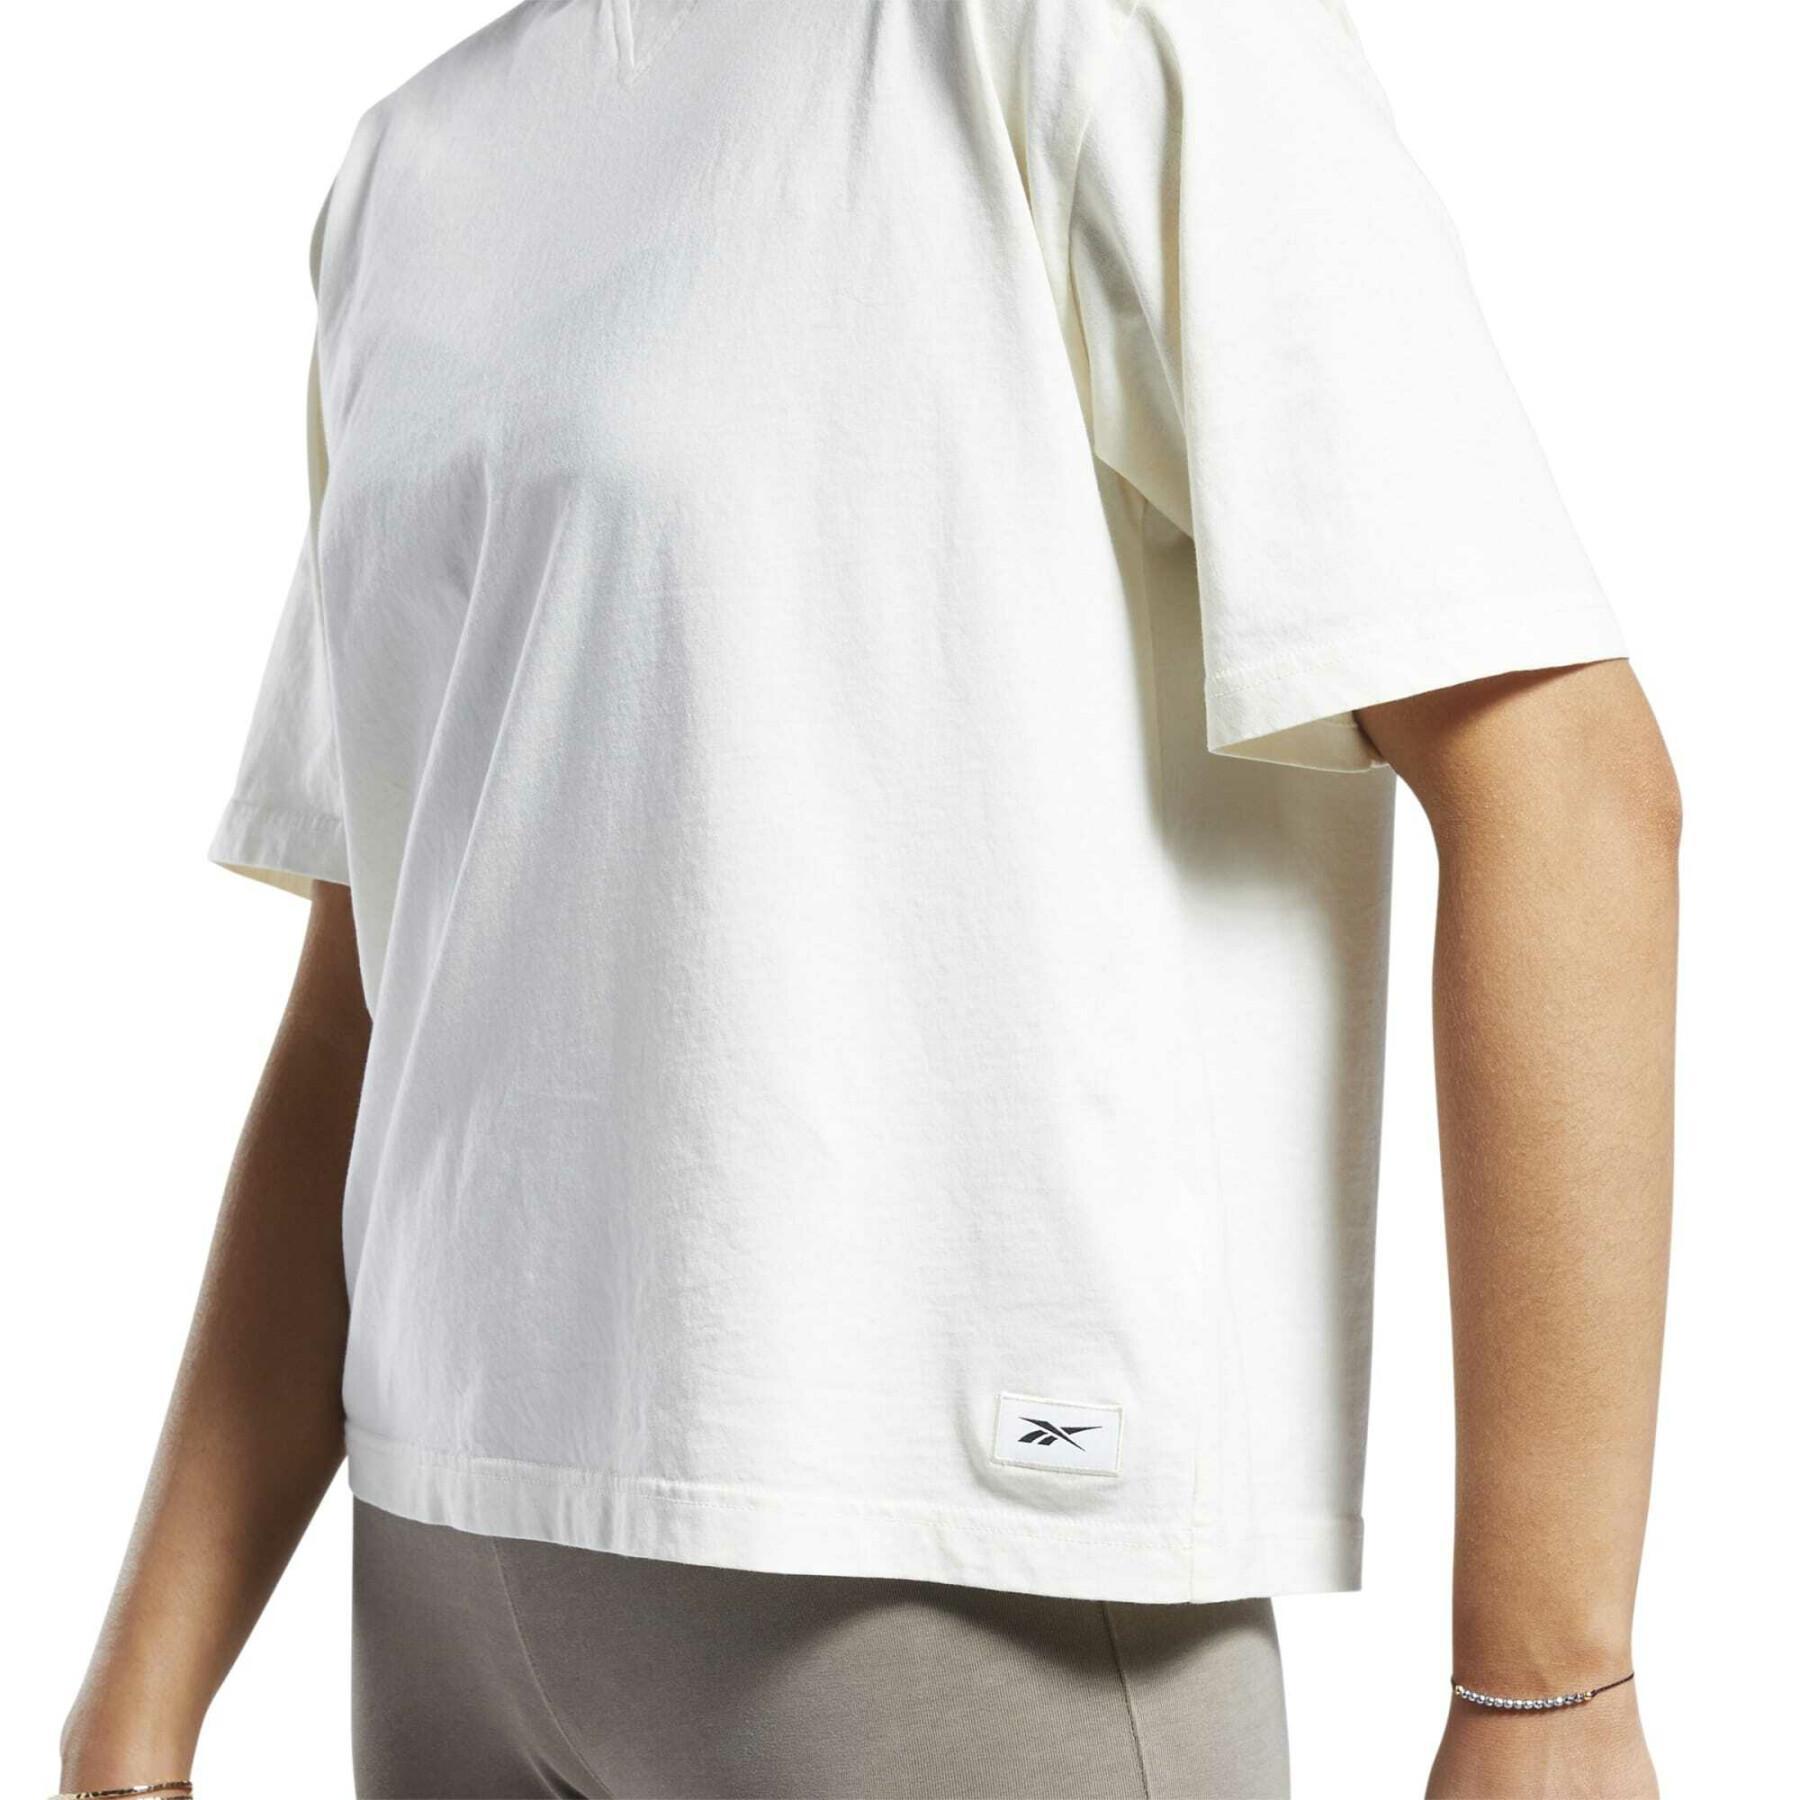 T-shirt donna con taglio dritto a tintura naturale Reebok Classics